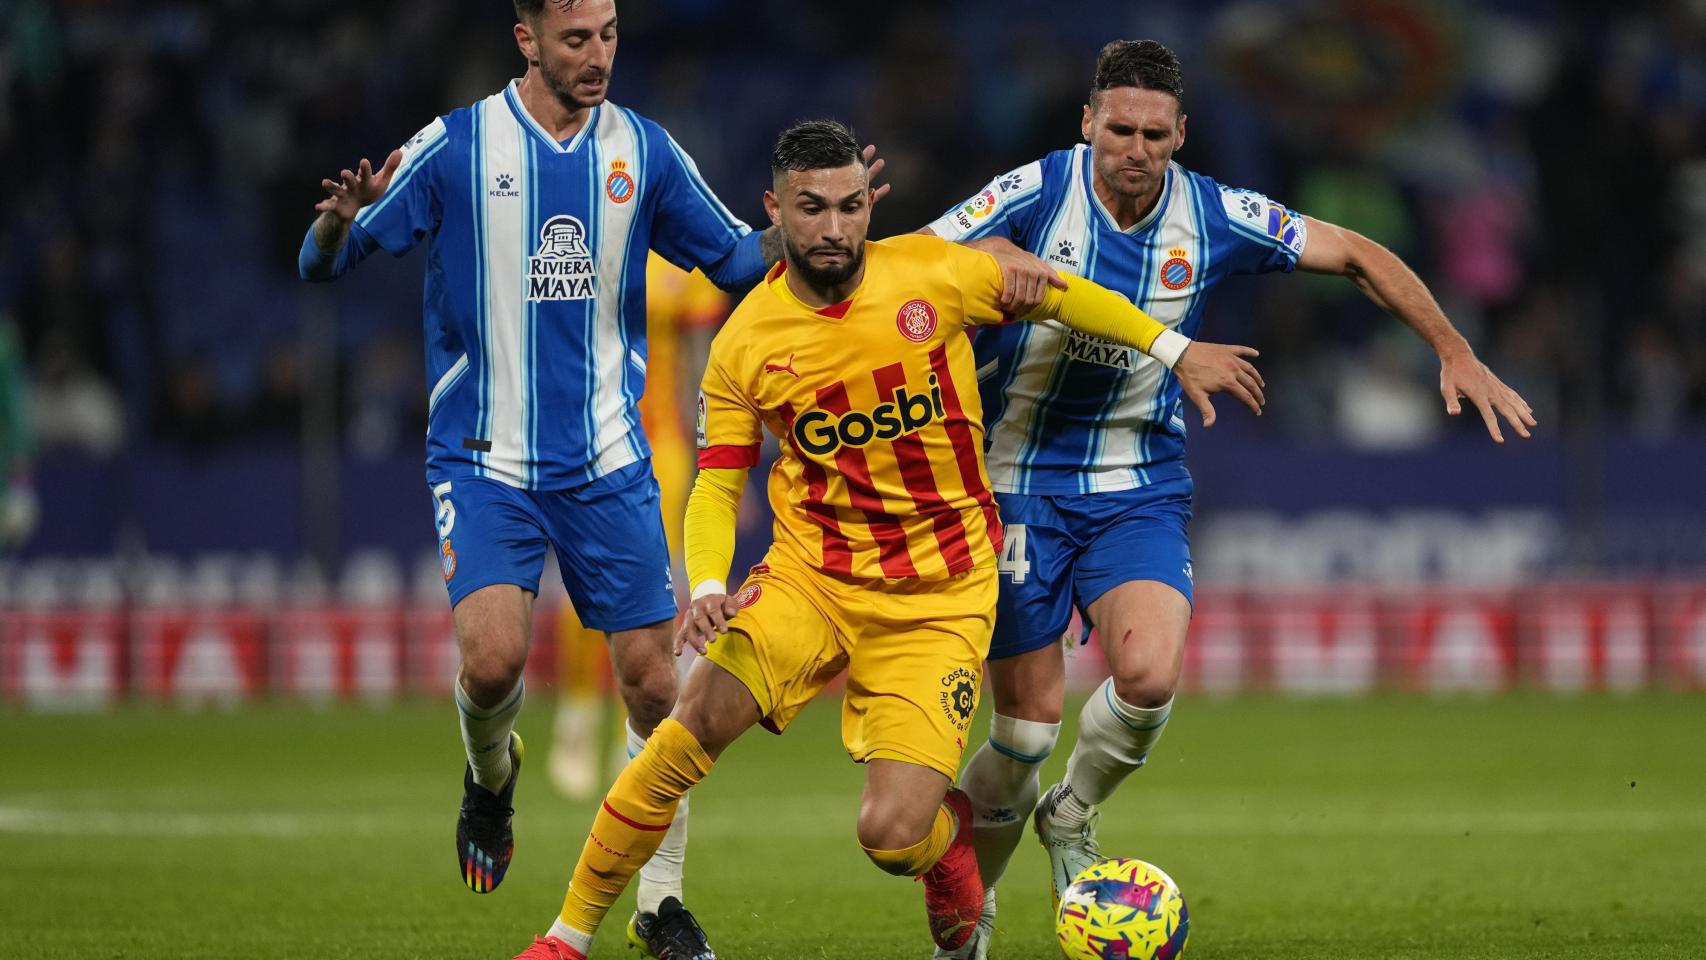 Espanyol 2 - Girona, | Resultado, resumen y goleadores del partido